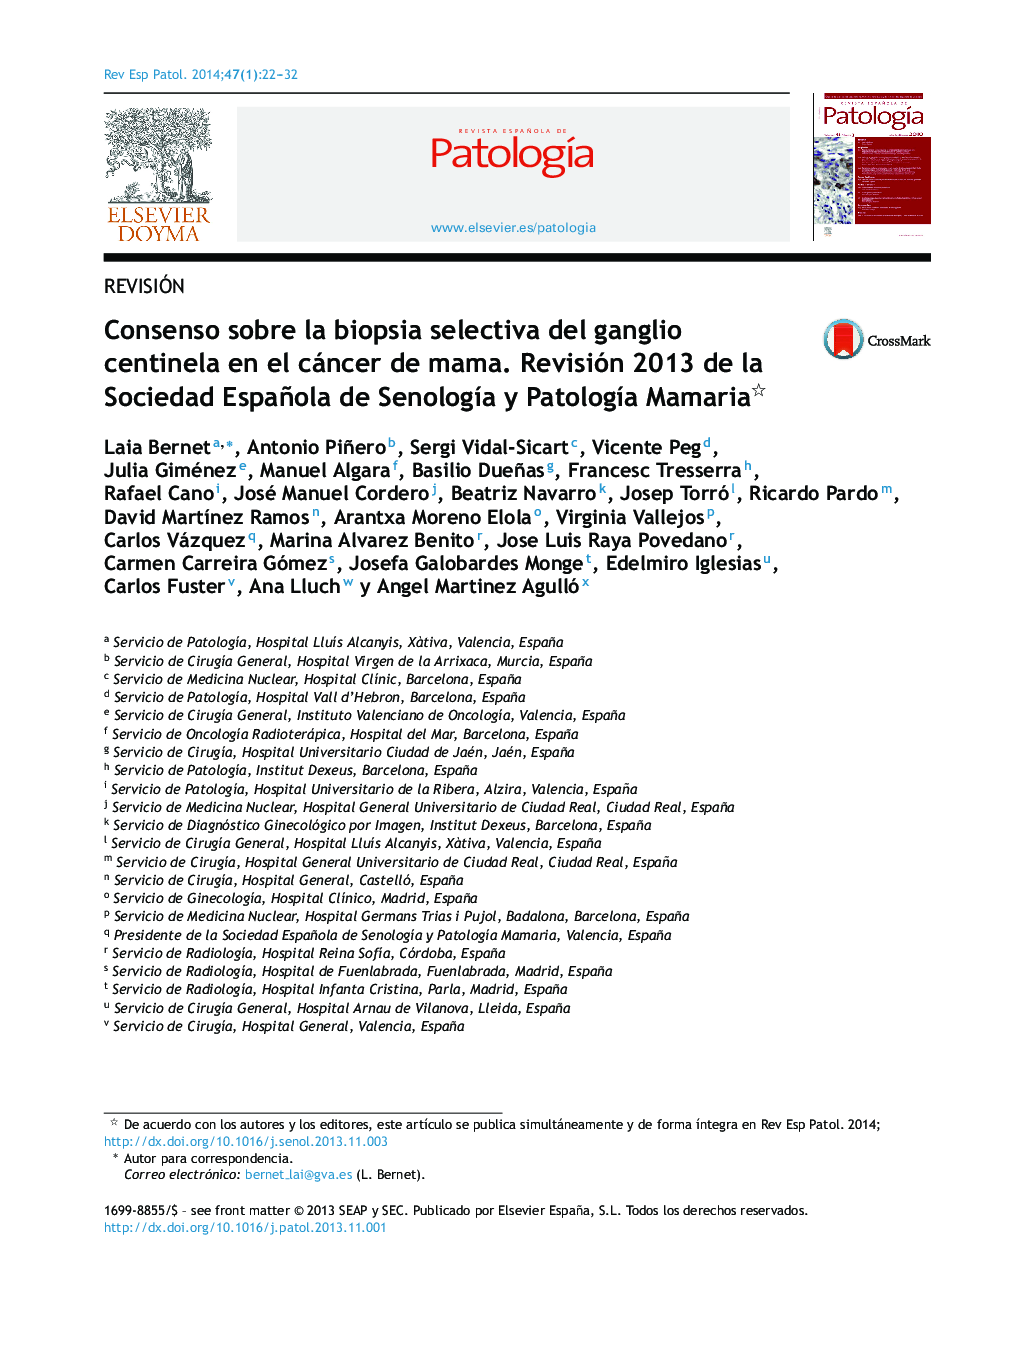 Consenso sobre la biopsia selectiva del ganglio centinela en el cáncer de mama. Revisión 2013 de la Sociedad Española de Senología y Patología Mamaria 